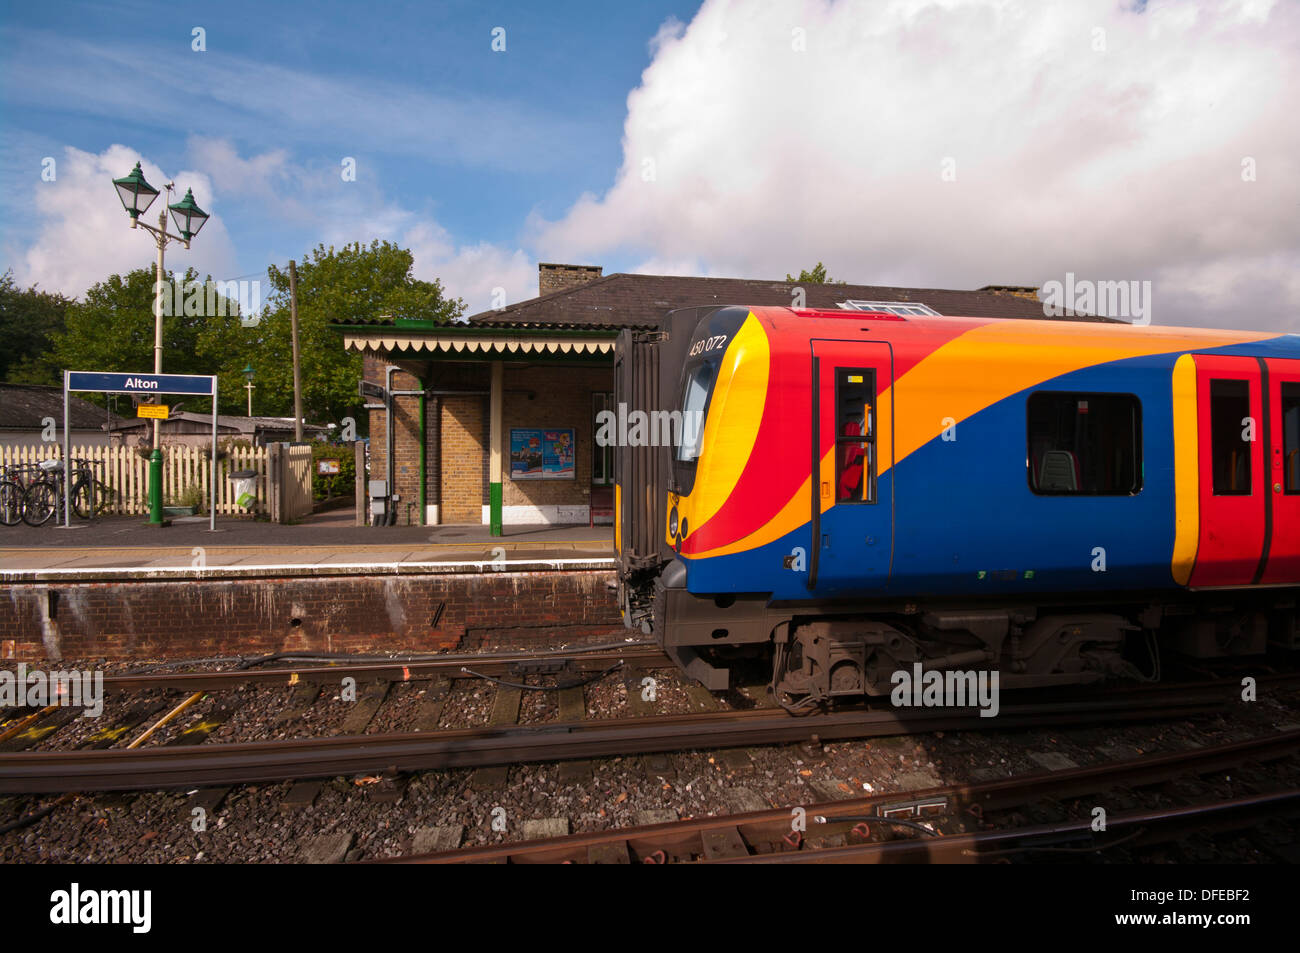 South West Trains Railway wagons de train, à la gare d'Alton hampshire UK Banque D'Images